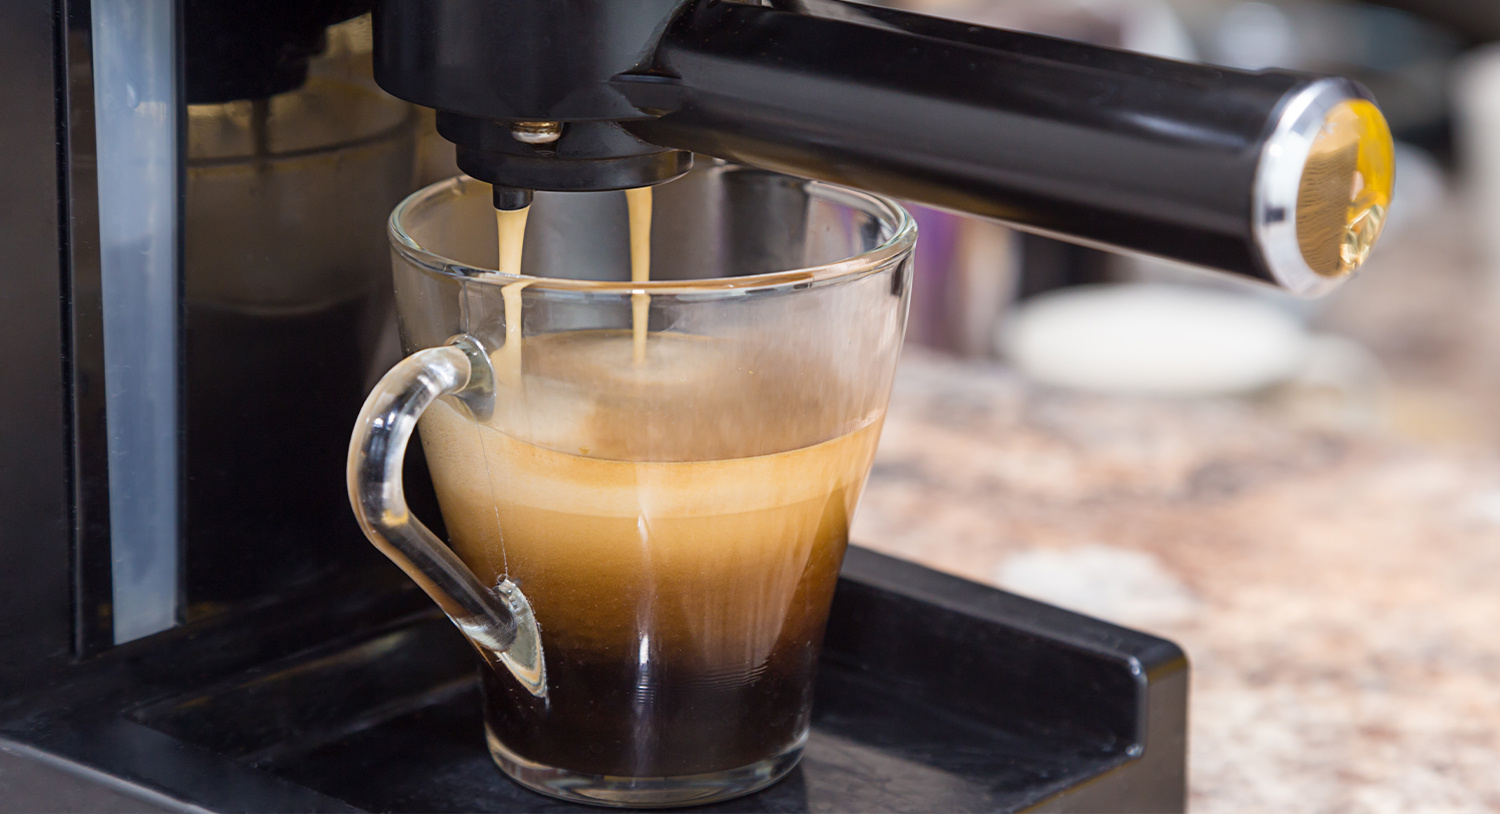 filiżanka-z-kawą-ekspres-ciśnieniowy-kolba-ekspres-kolbowy-zaparzanie-kawy-czas-na-kawę-blog